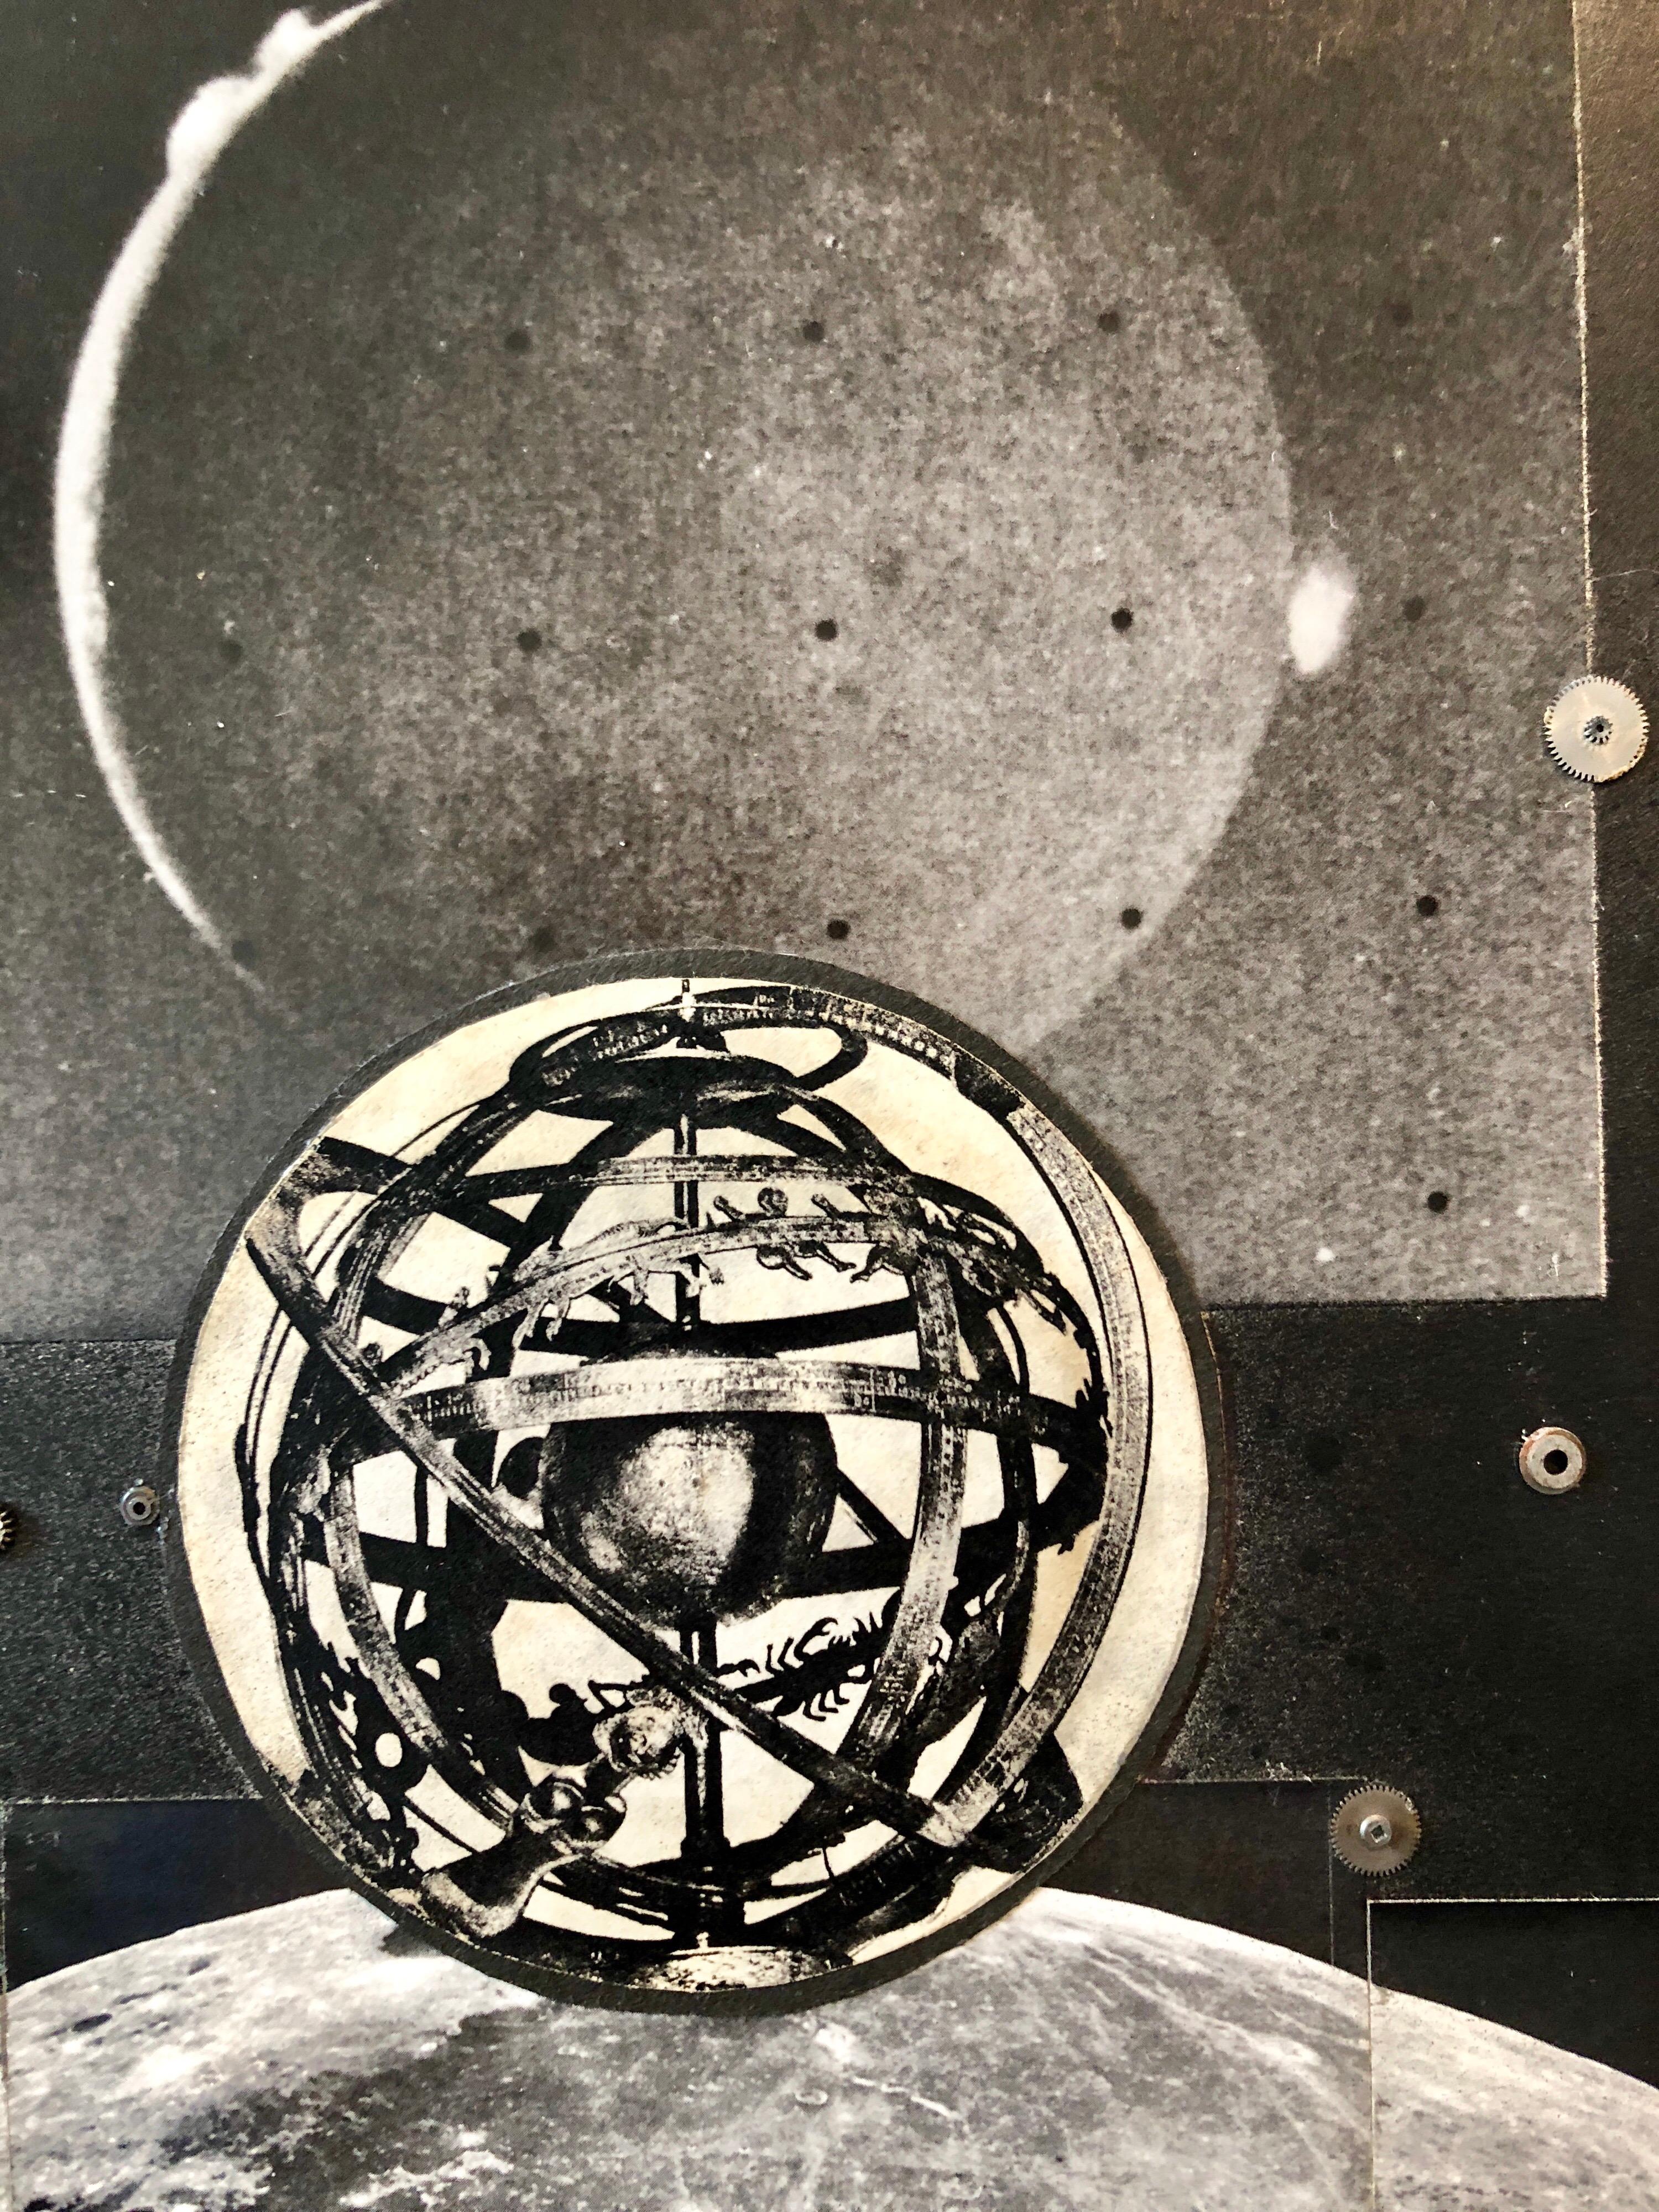 Dieses Bild zeigt eine Planetenanordnung mit kleinen Uhrenteilen (Metallrädern), die darauf collagiert sind.
Sie trägt den Titel Josias Astronomische Uhr
SIMONS, Vera (1920 - 2012)
Vera Habrecht Simons, war eine deutsch-amerikanische